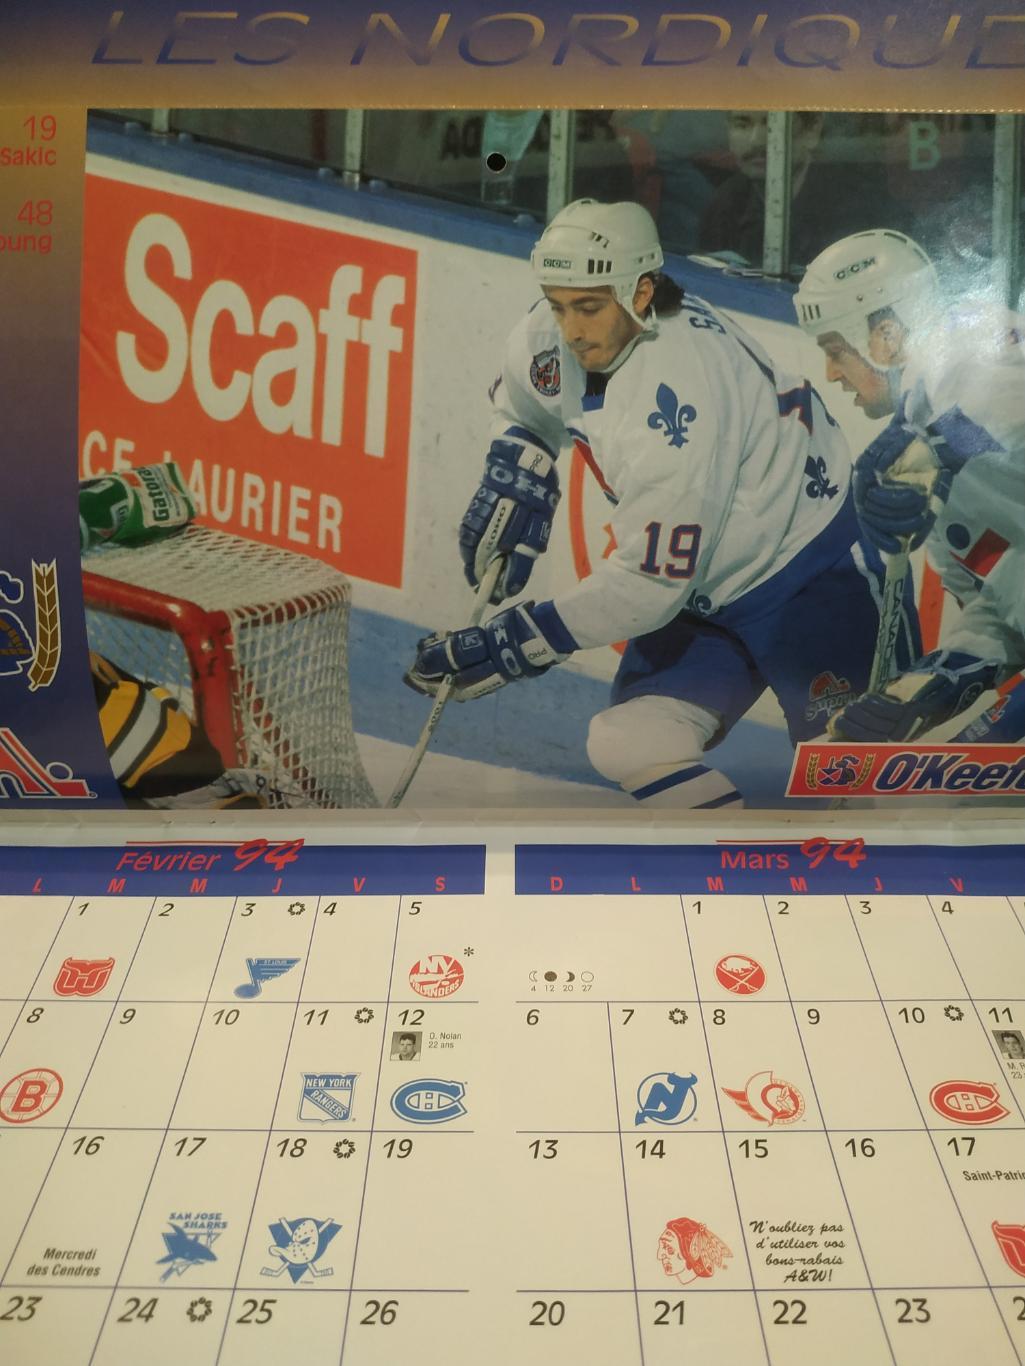 ХОККЕЙ КАЛЕНДАРЬ НХЛ КВЕБЕК НОРДИКС 1994 NHL LES NORDIQUES OFFICIAL CALENDAR 2